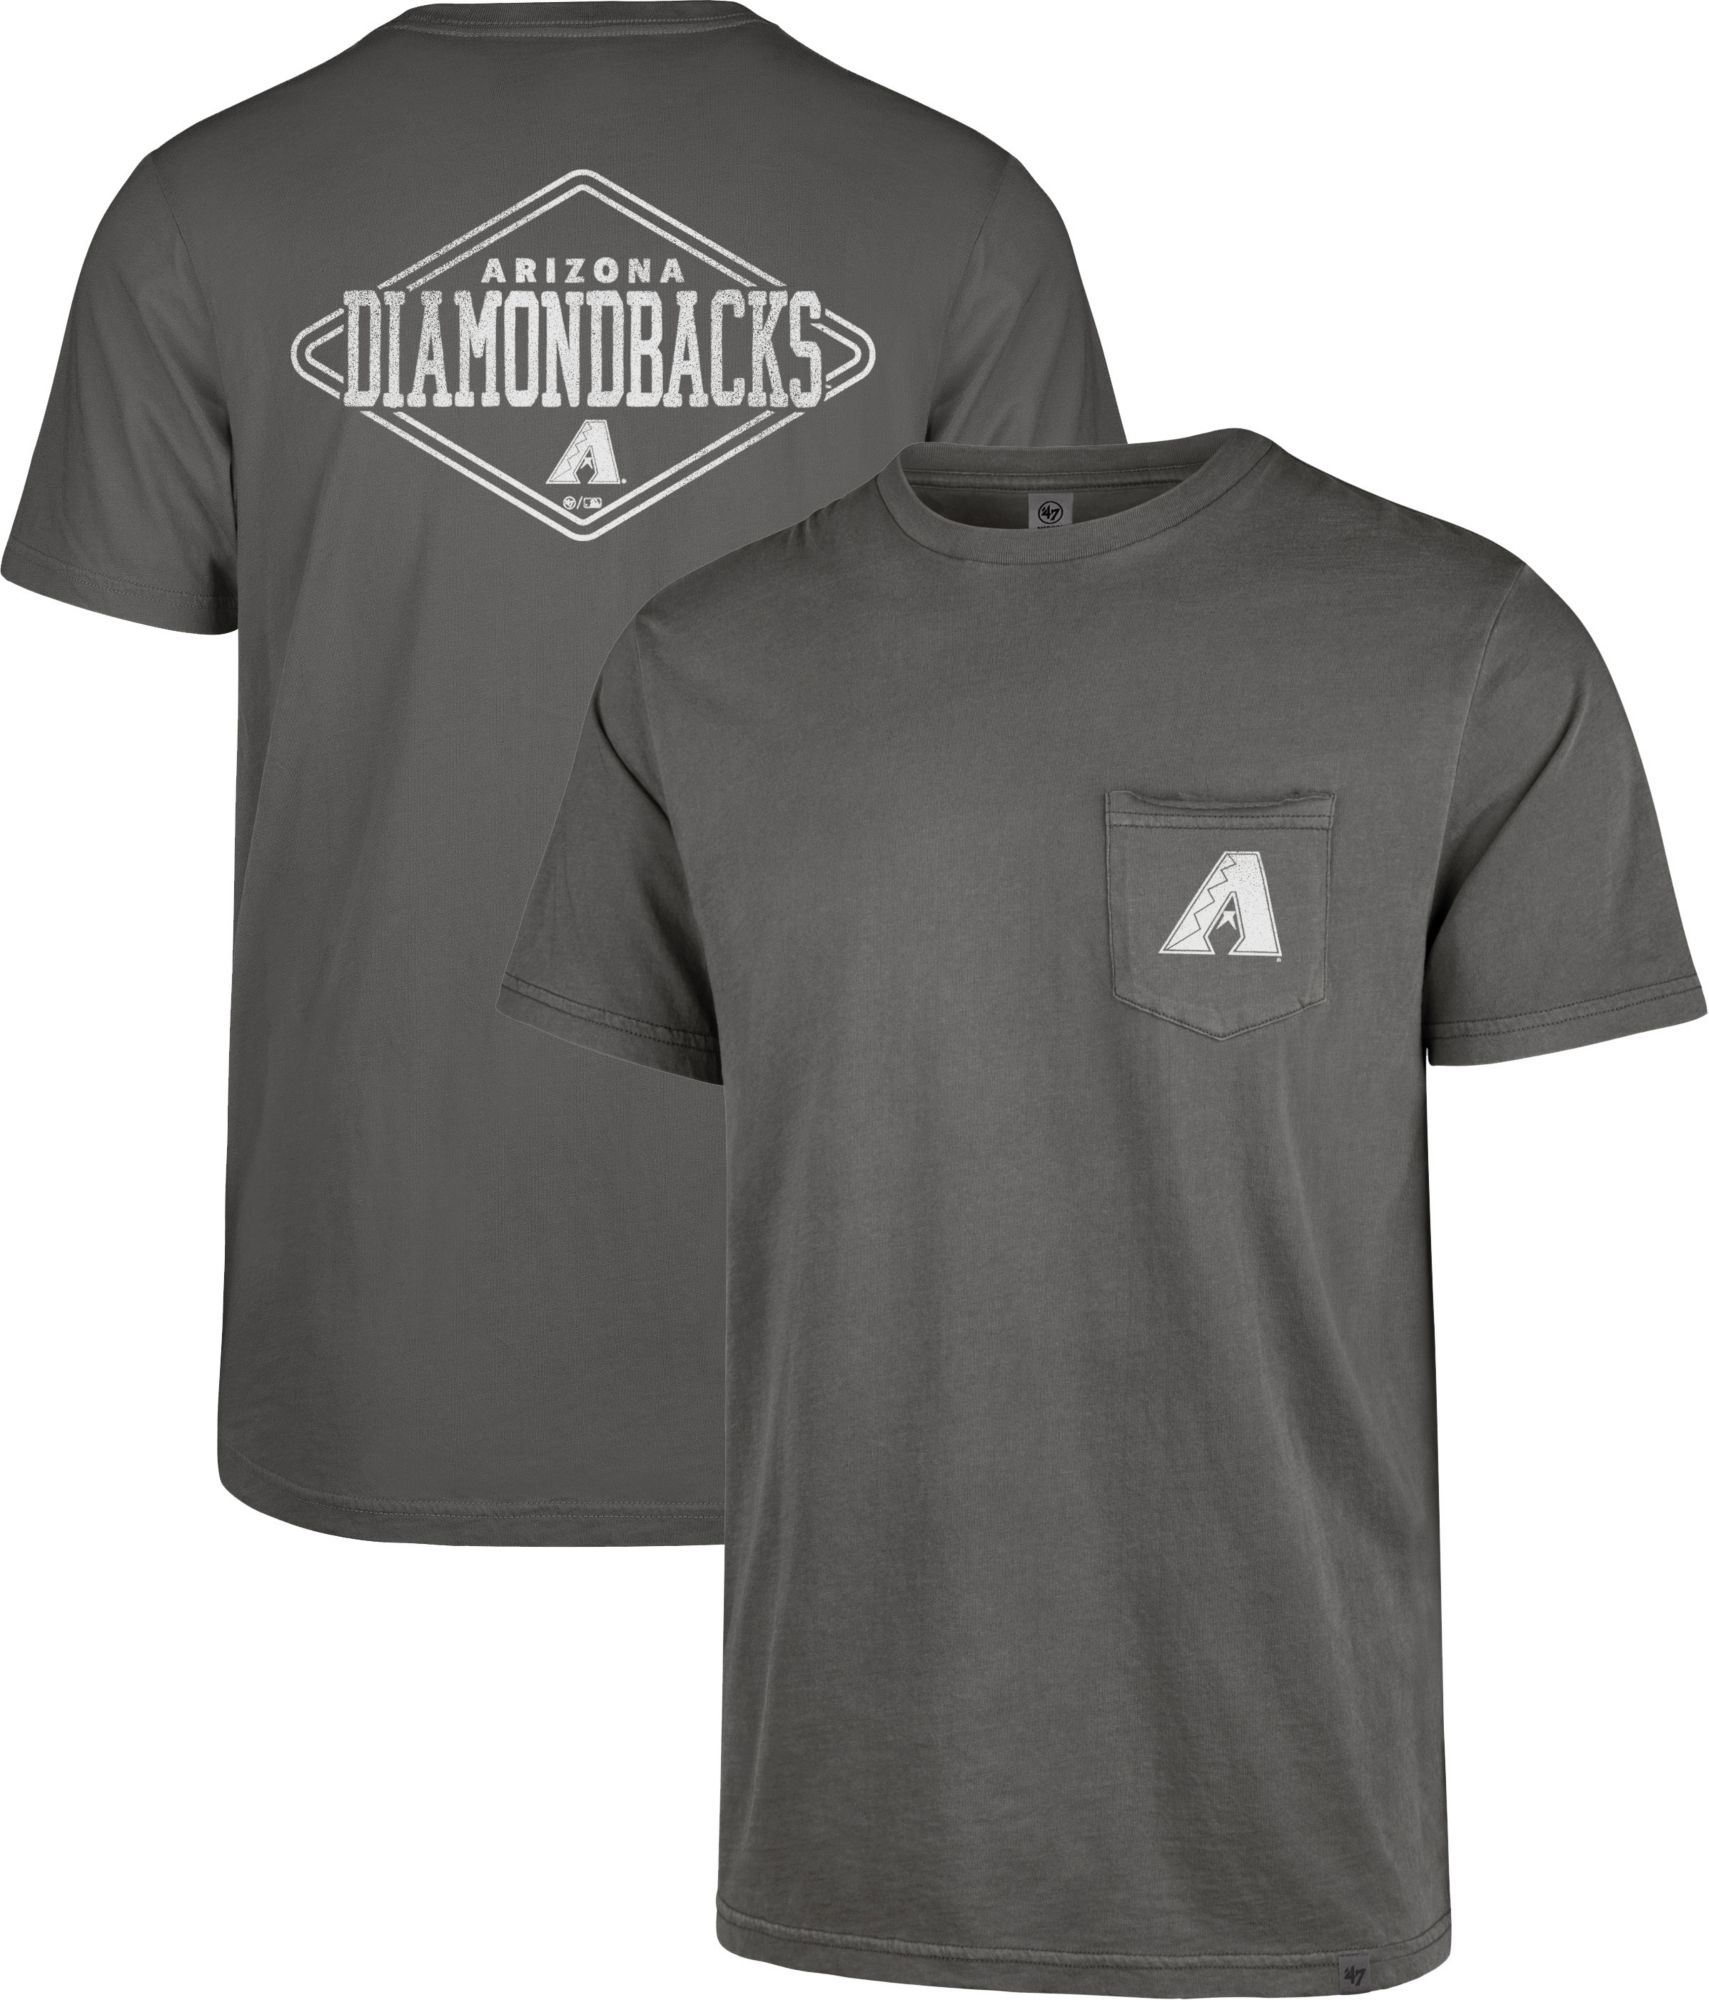 arizona diamondbacks shirts